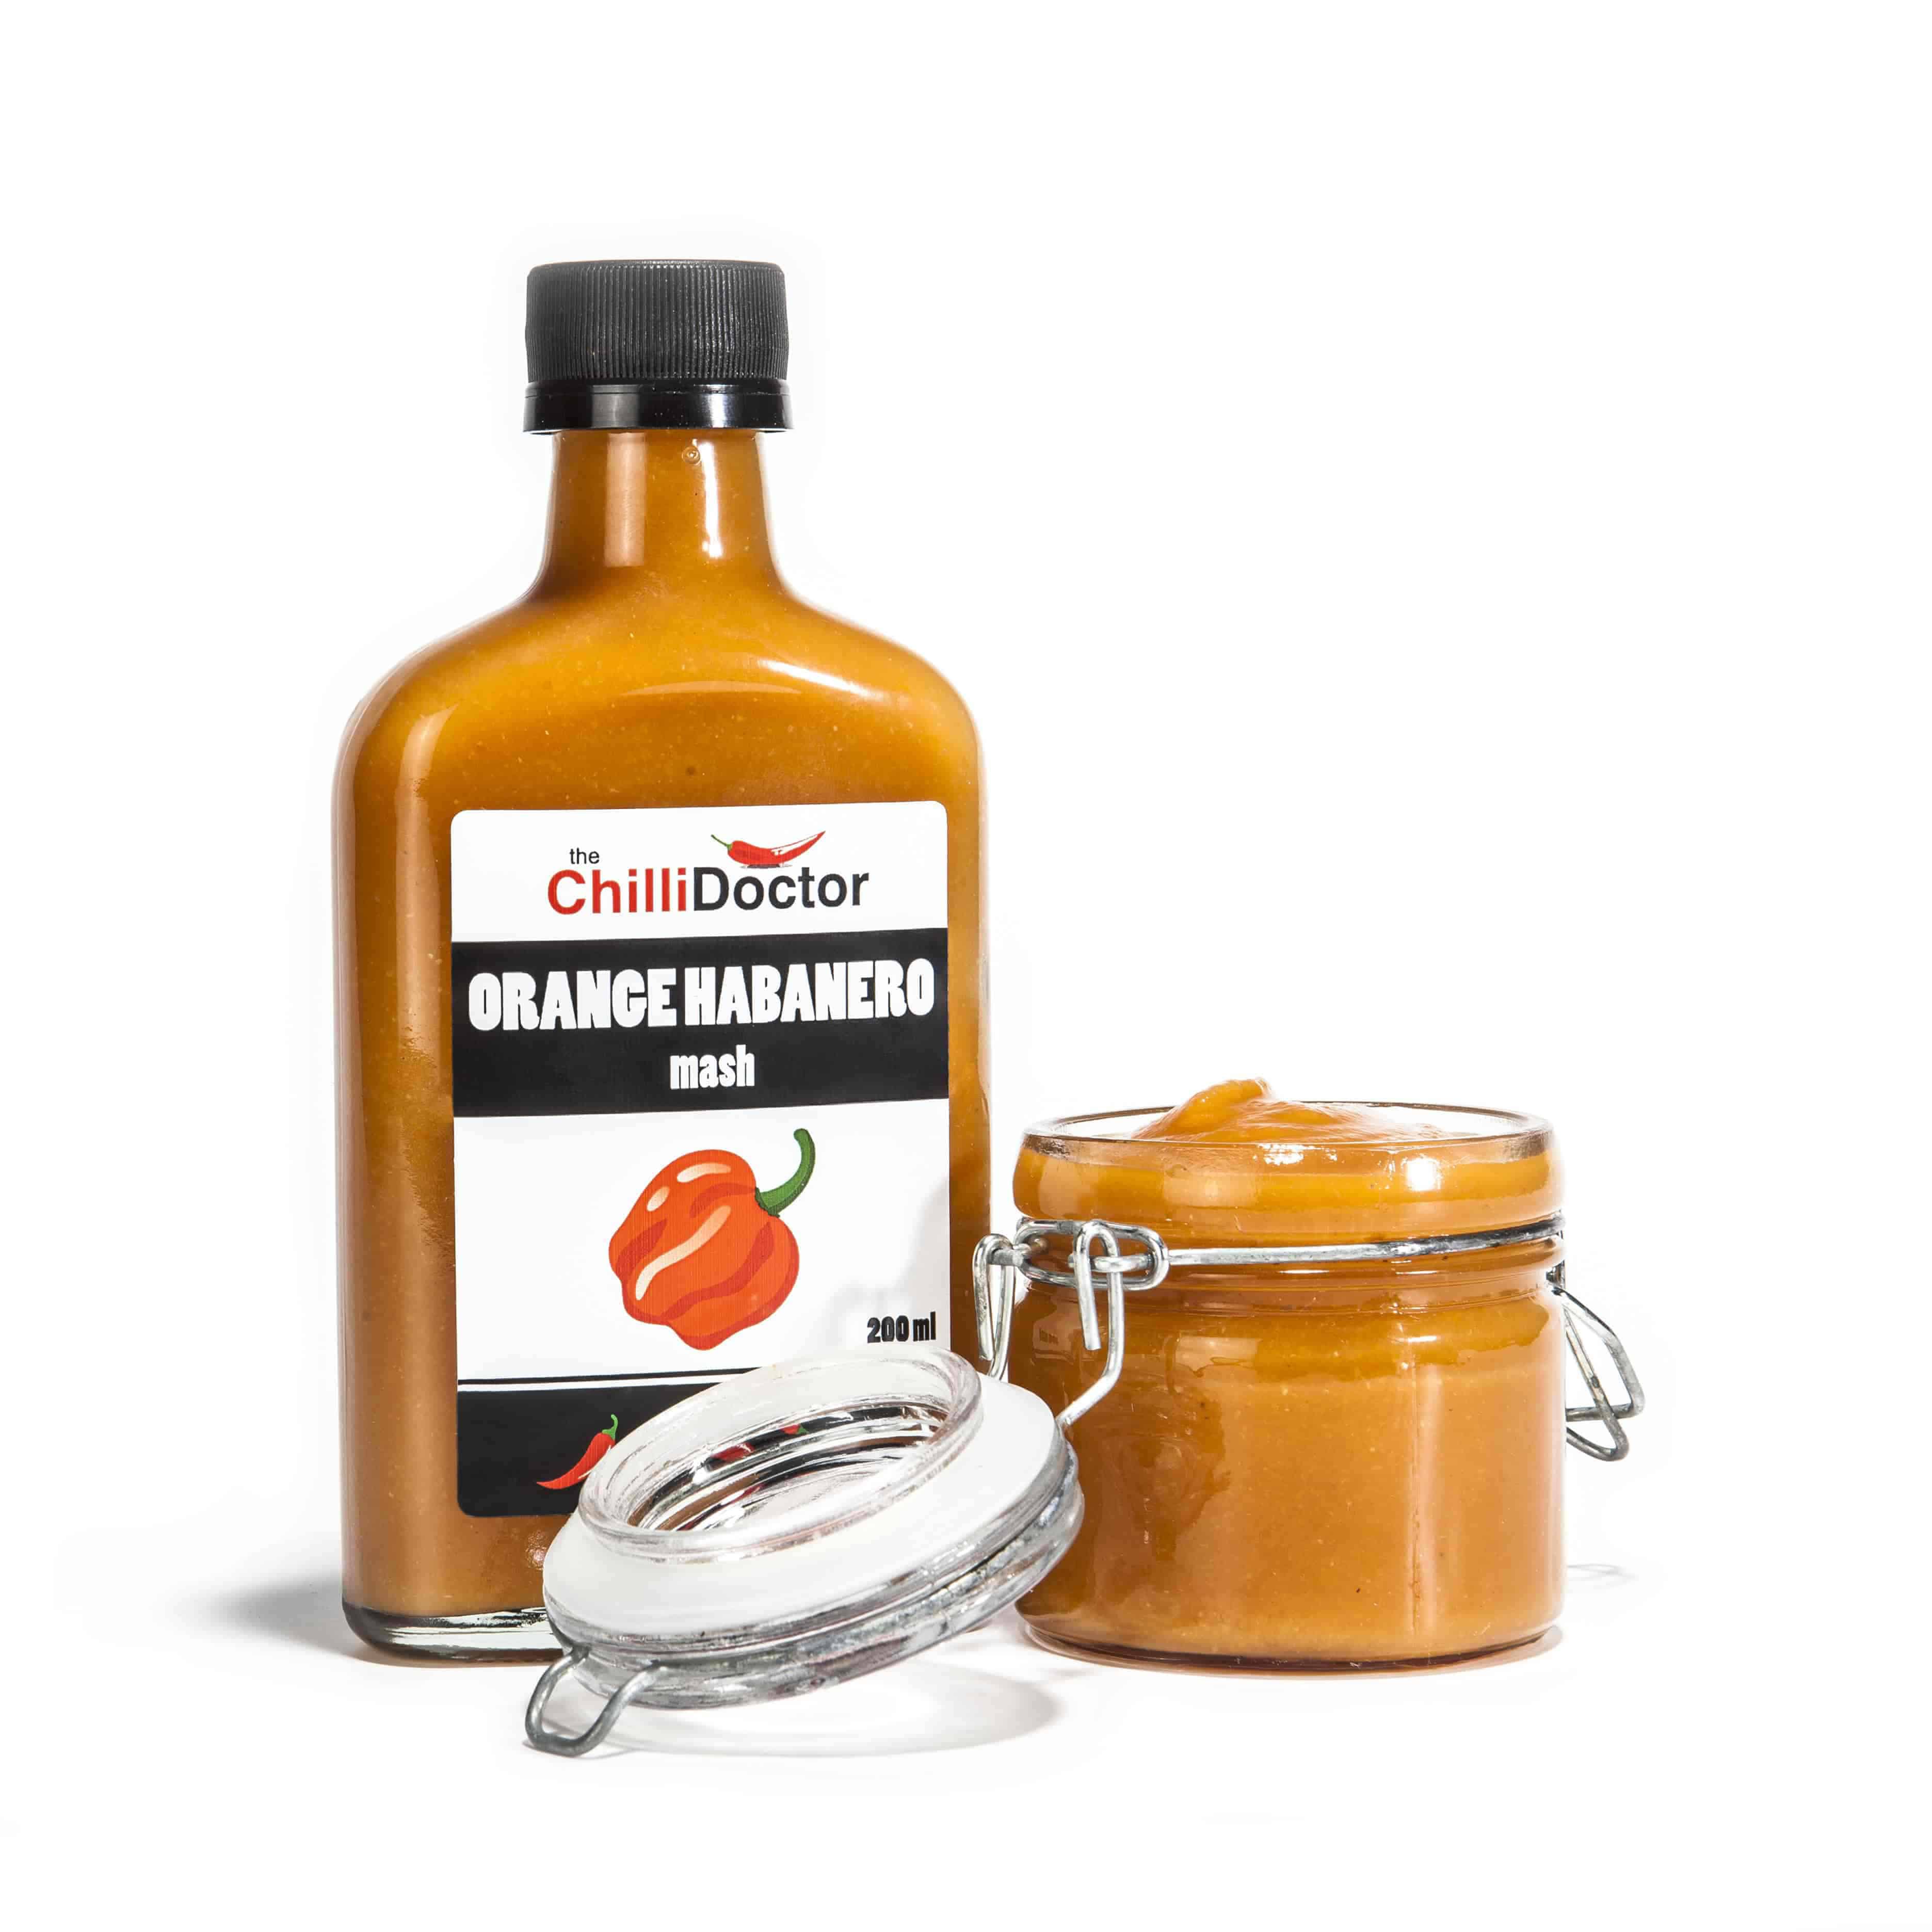 Habanero arancio peperoncino piccante salsa